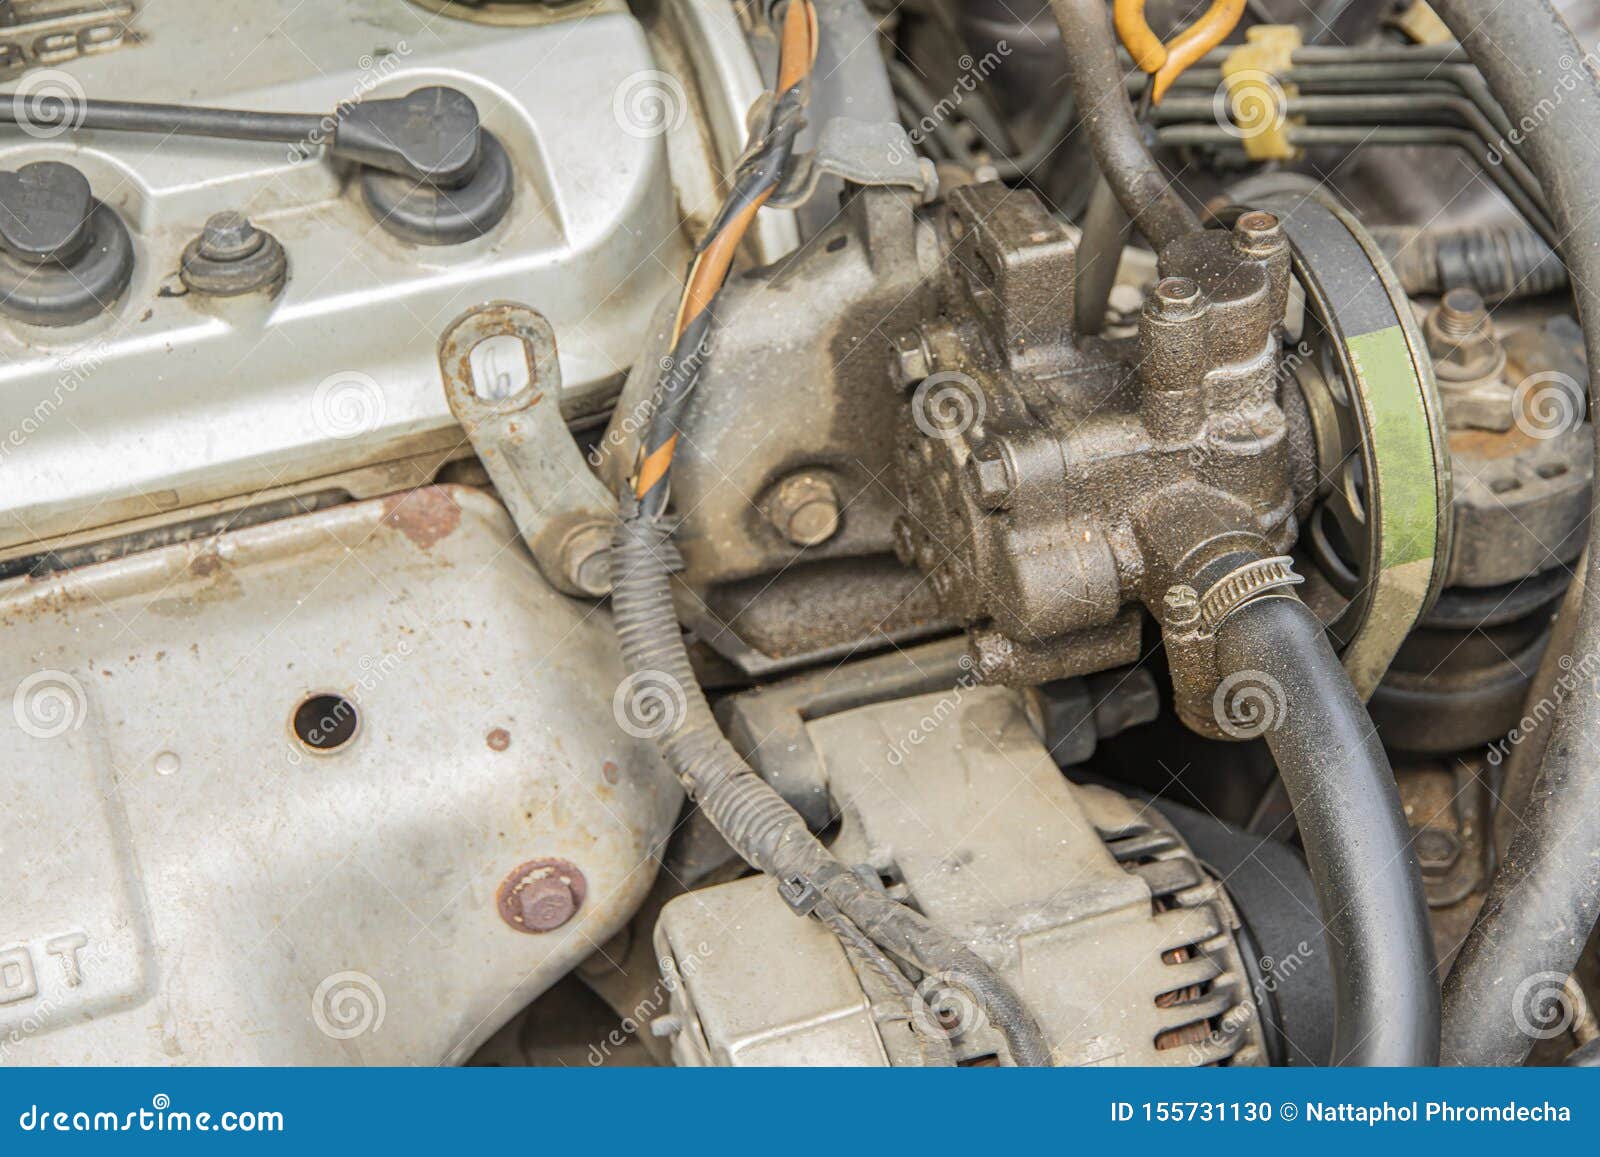 Power Steering Pump is Leaking Oil from Gasket Editorial Image - Image